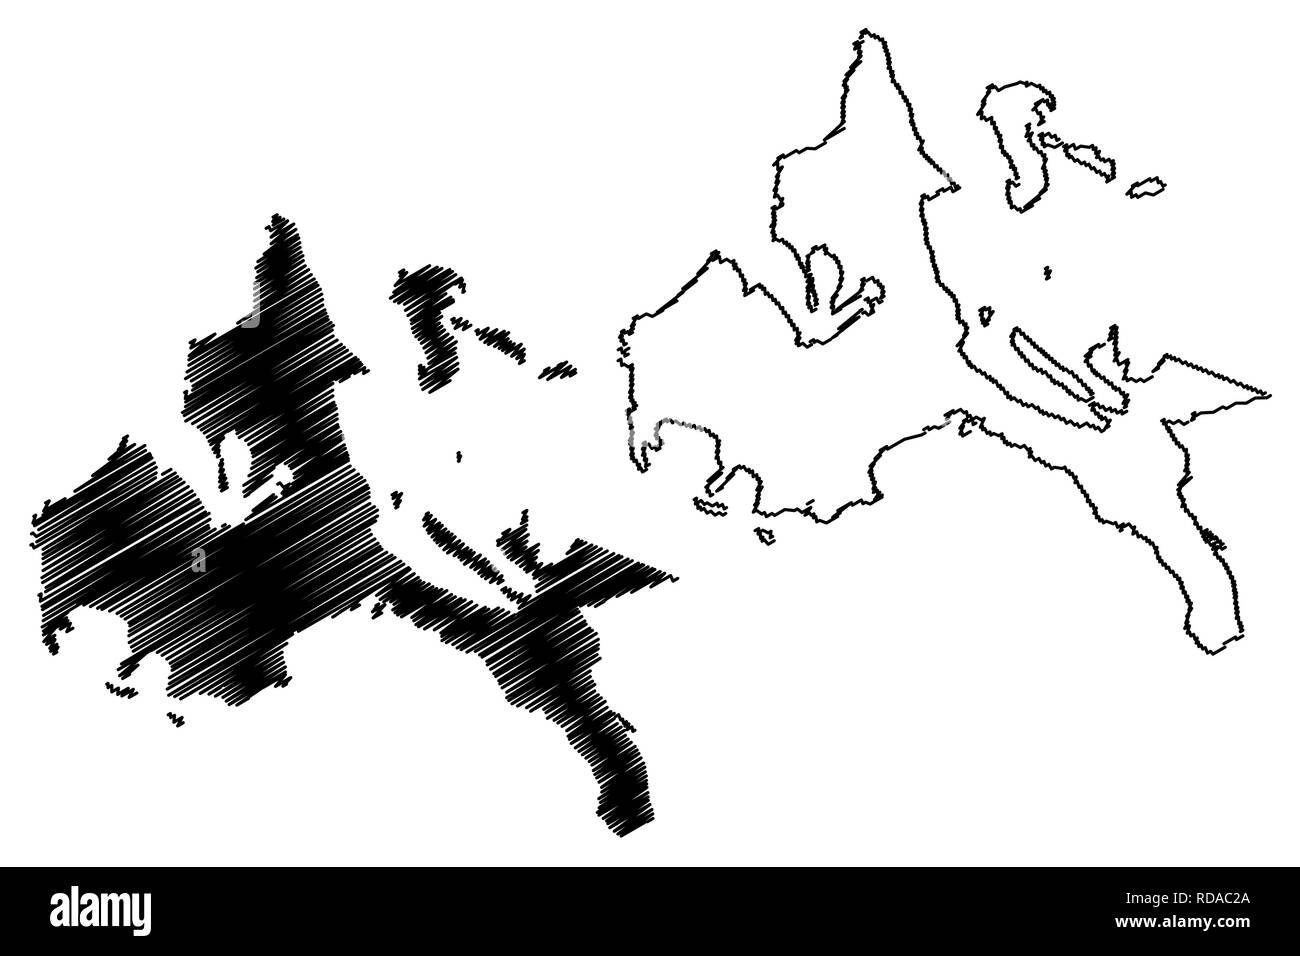 Calabarzon Region (Regionen und Provinzen der Philippinen, die Republik der Philippinen) Karte Vektor-illustration, kritzeln Skizze Southern Tagalog Ma Stock Vektor